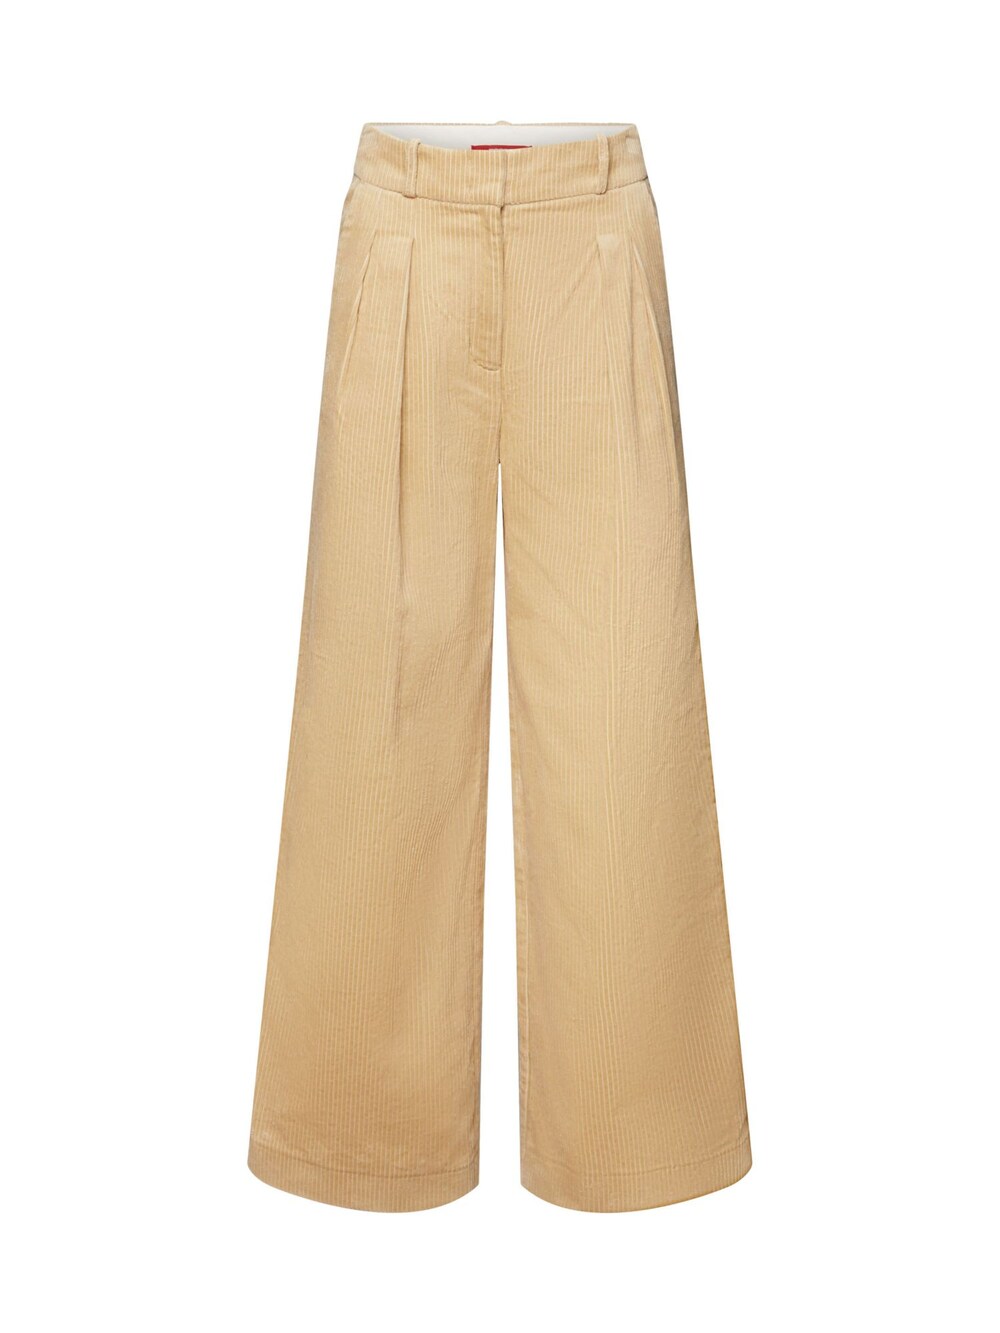 Широкие брюки со складками спереди Esprit, бежевый широкие брюки со складками misspap бежевый